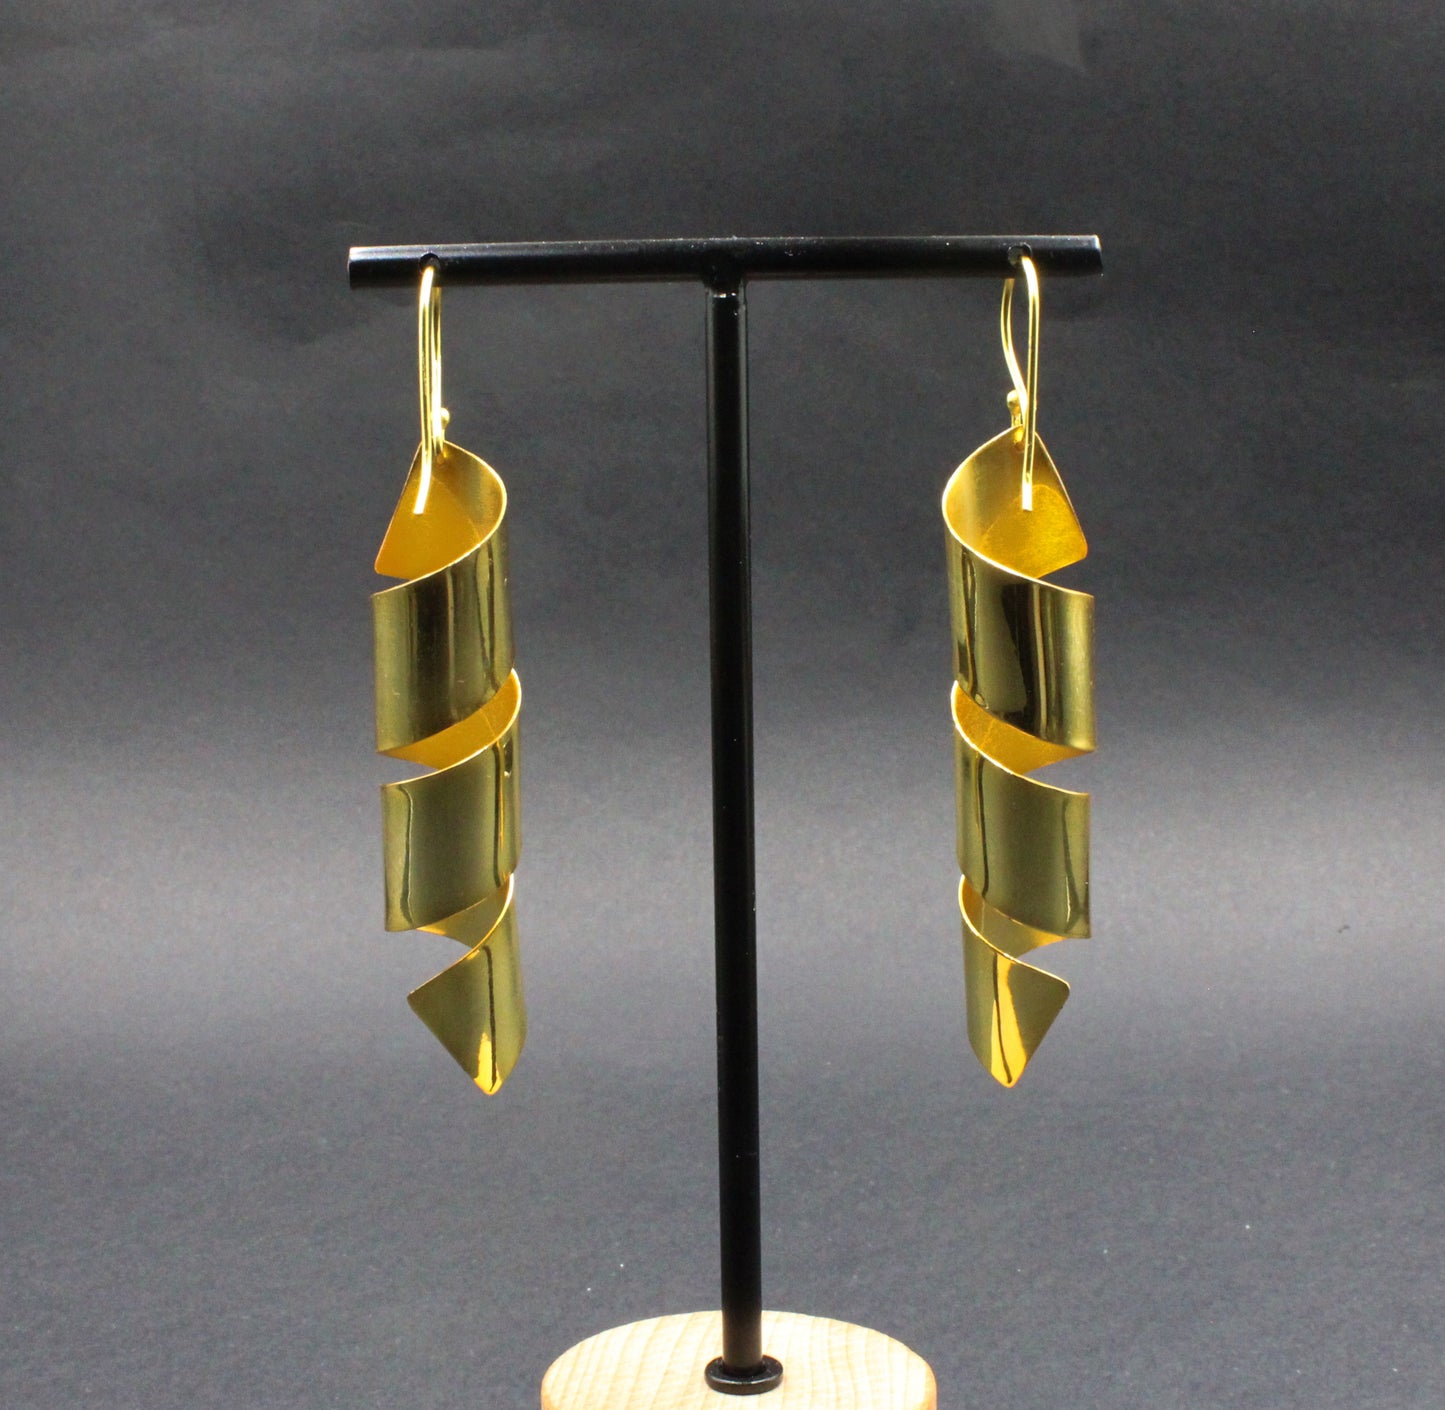 VIRUTA earrings plated in 18kt gold